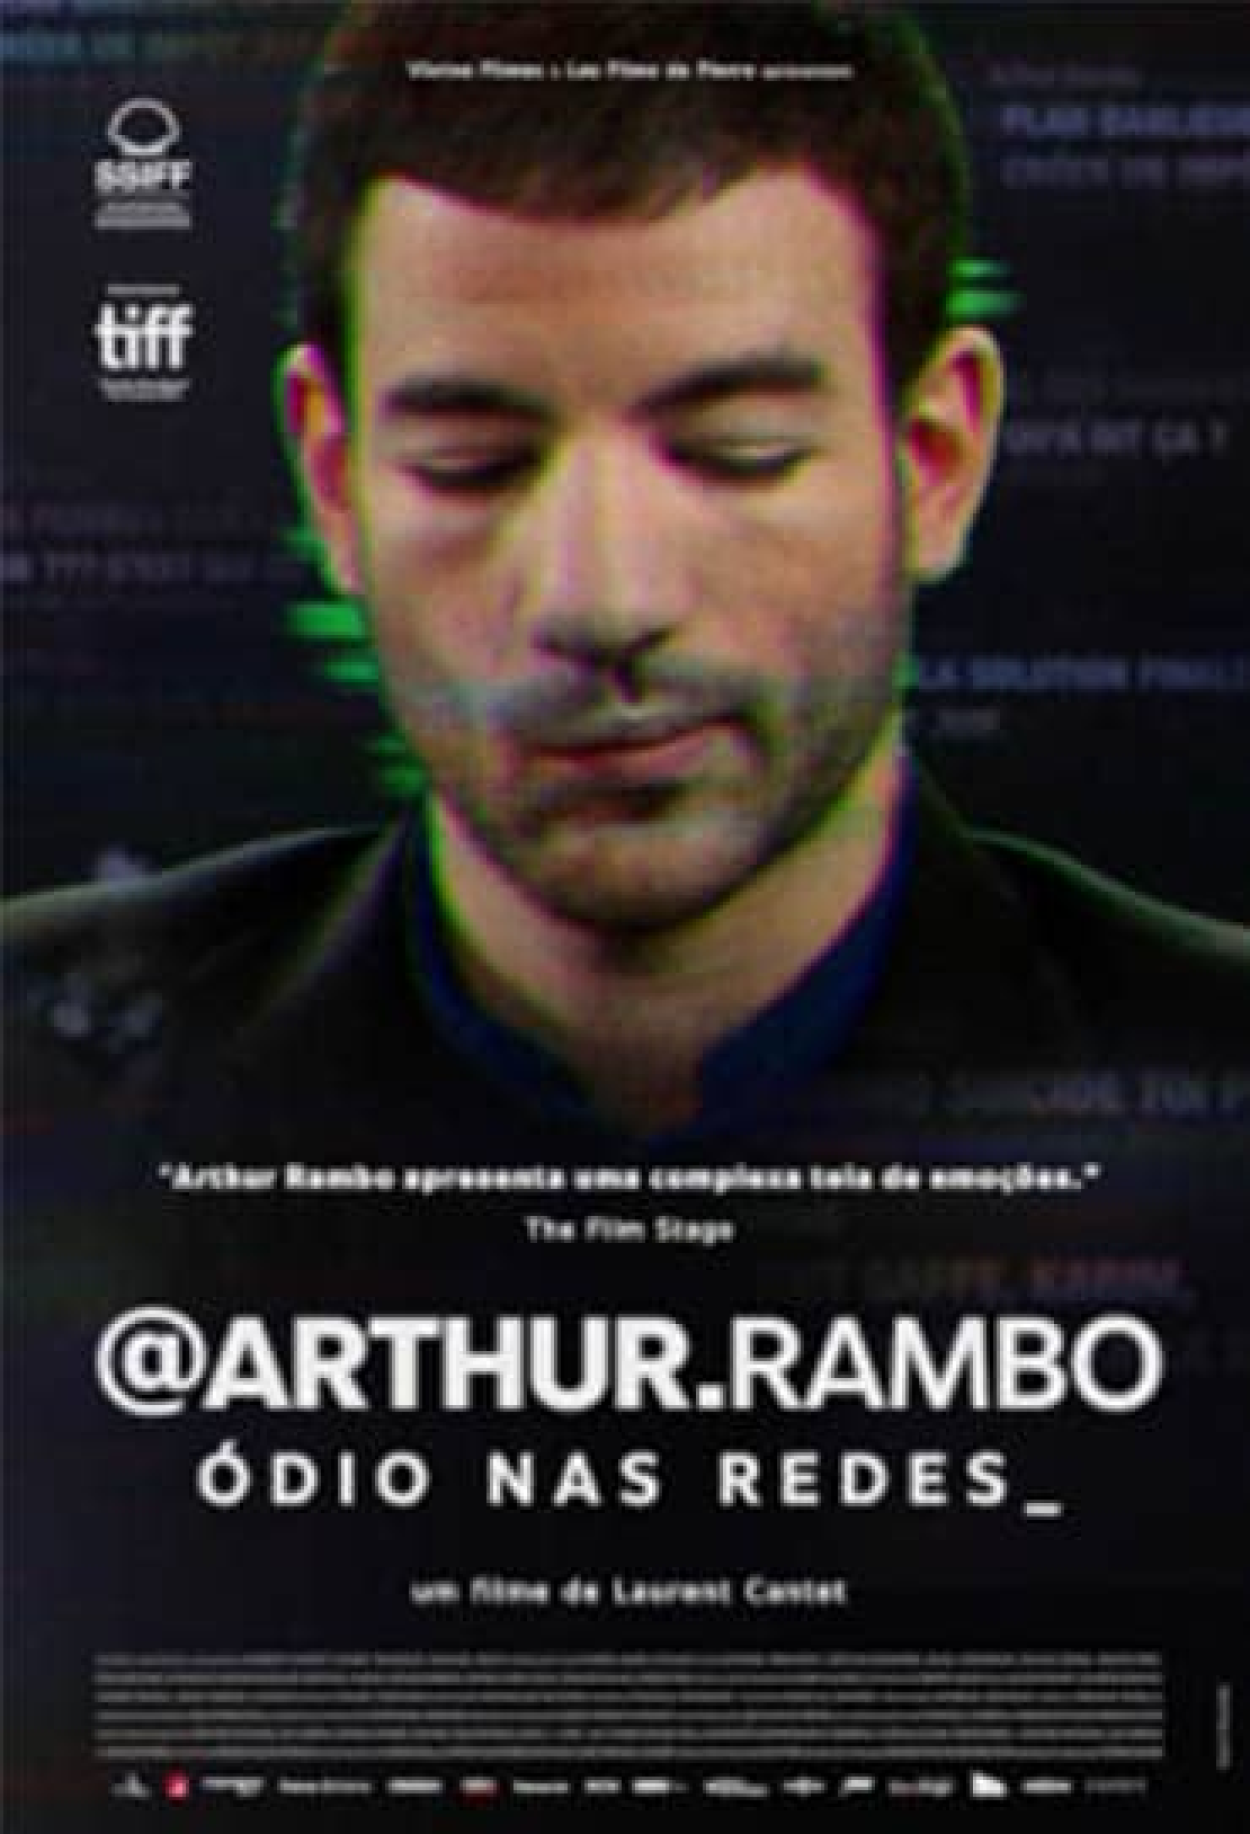 Bubble (Filme), Trailer, Sinopse e Curiosidades - Cinema10